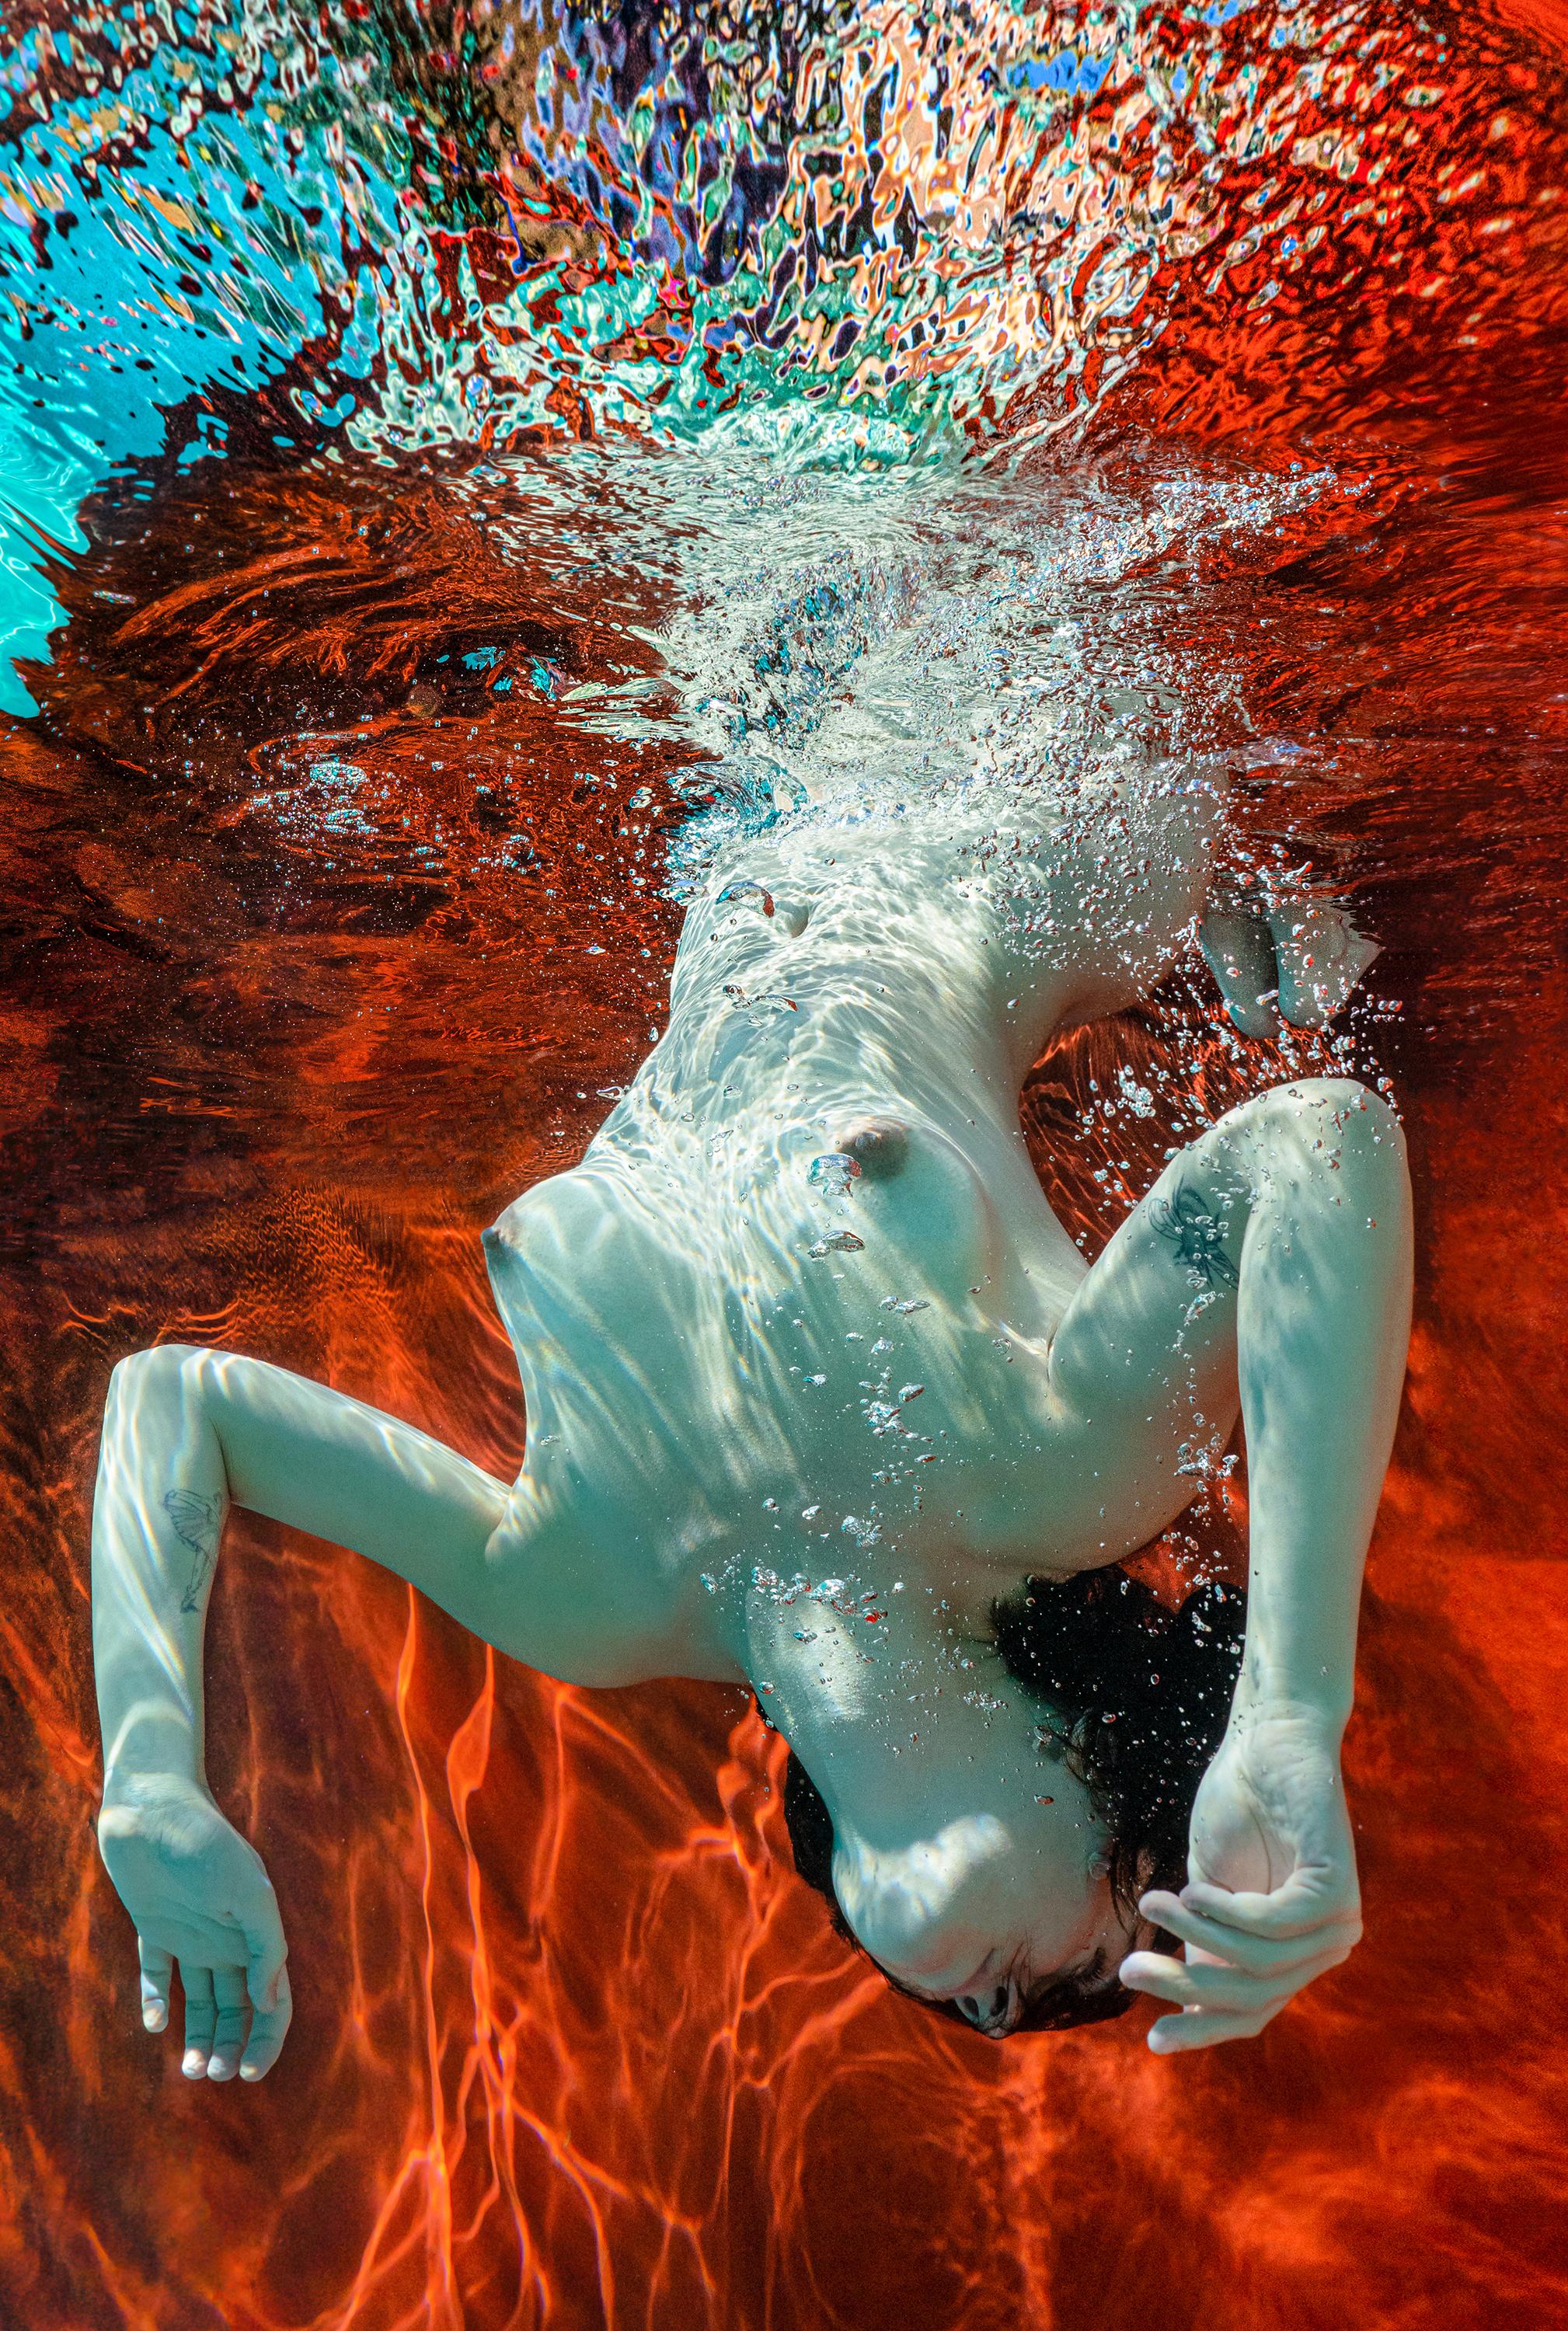 Summer - photographie de nu subaquatique - pigment d'archives 35